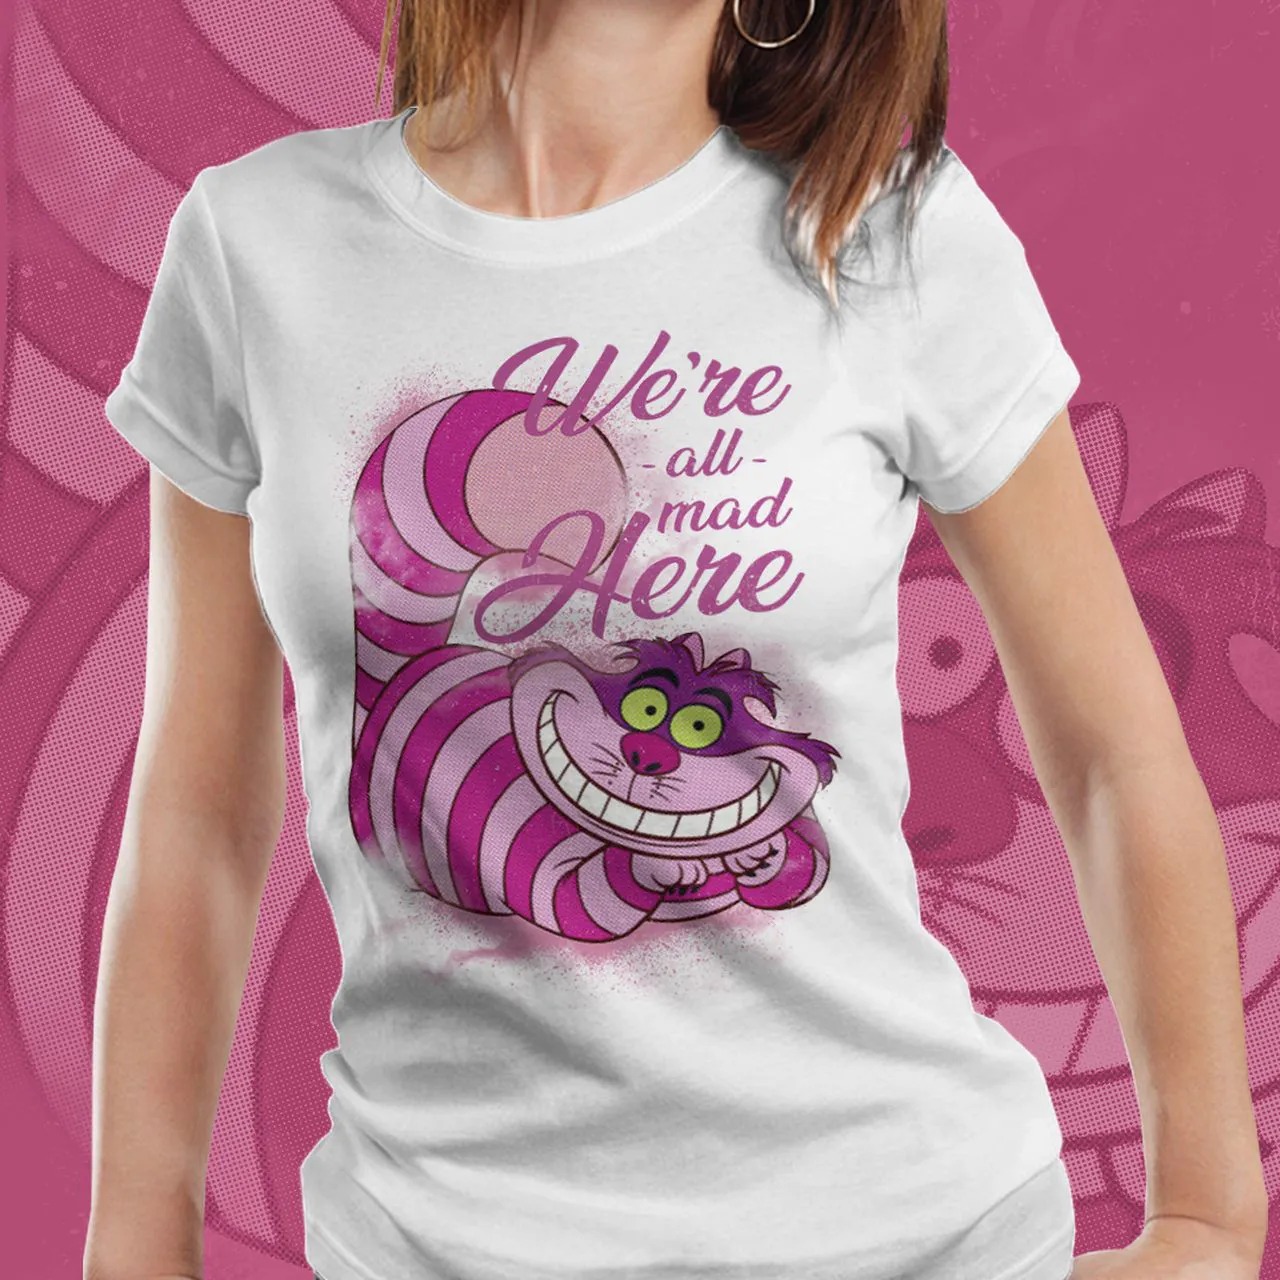 Camiseta Feminina Gato de Cheshire (Cheshire Cat): Alice no País das Maravilhas (Alice in Wonderland)